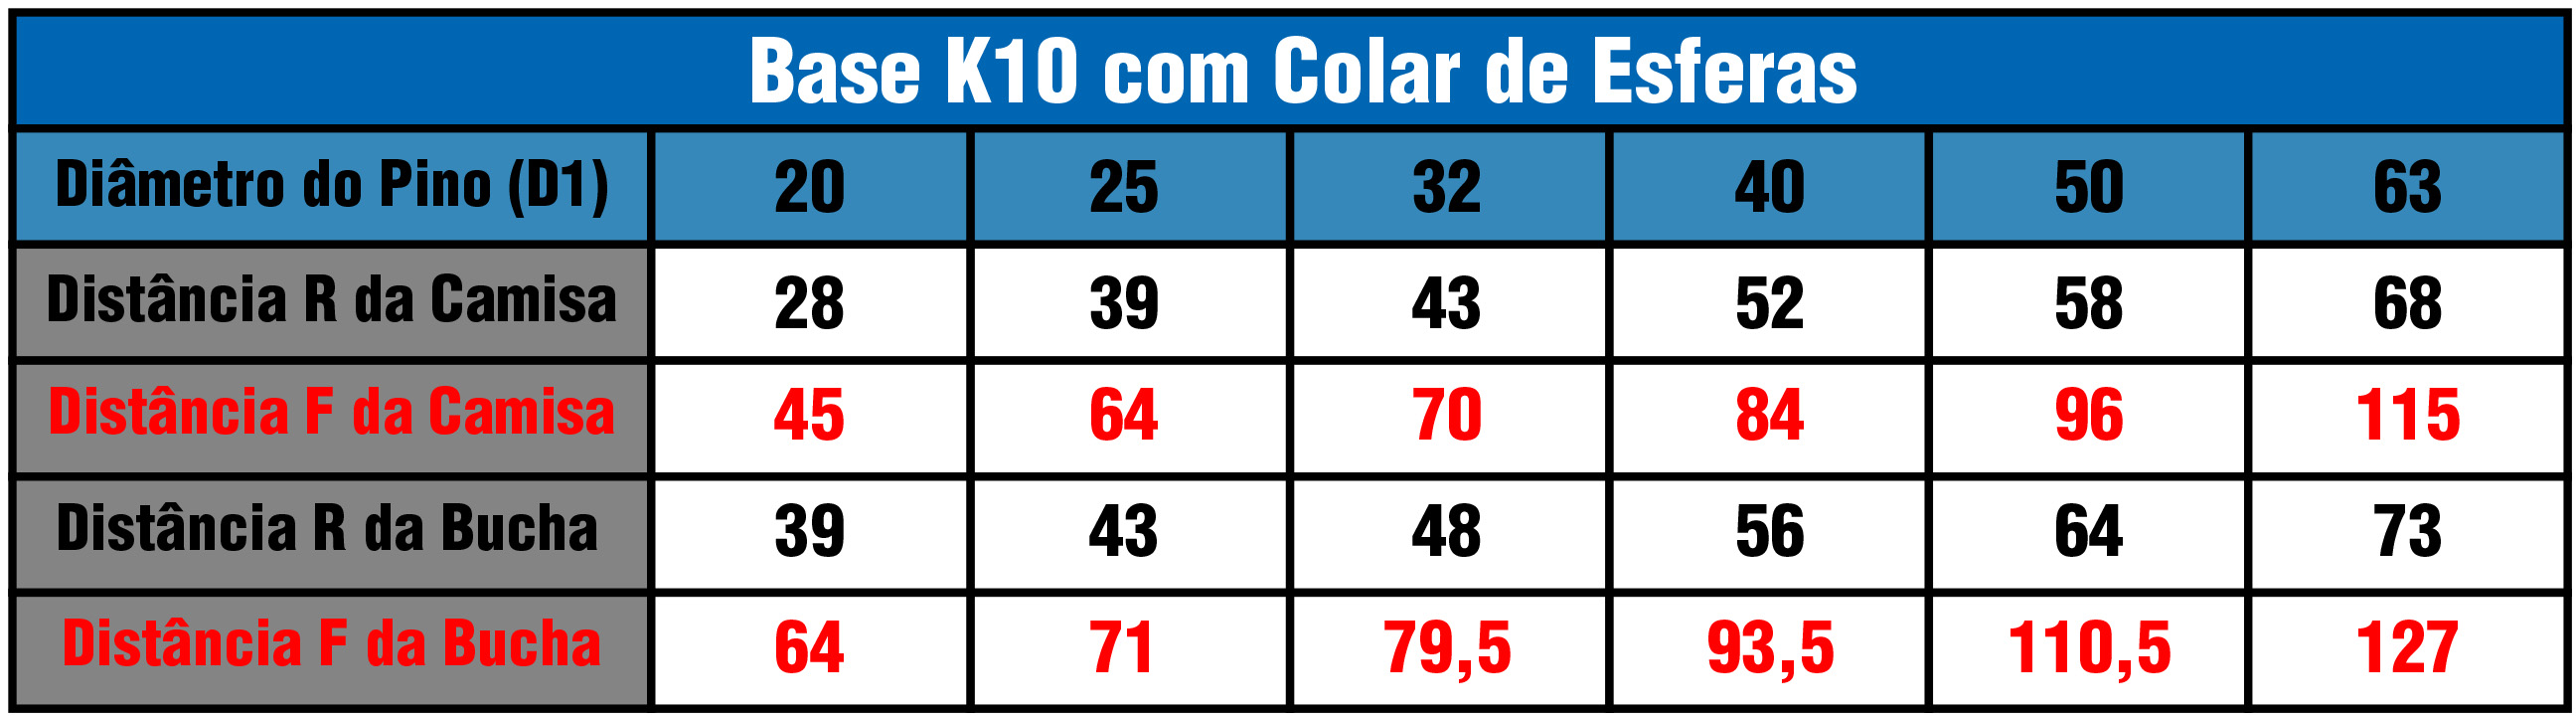 Tabela Base K10G